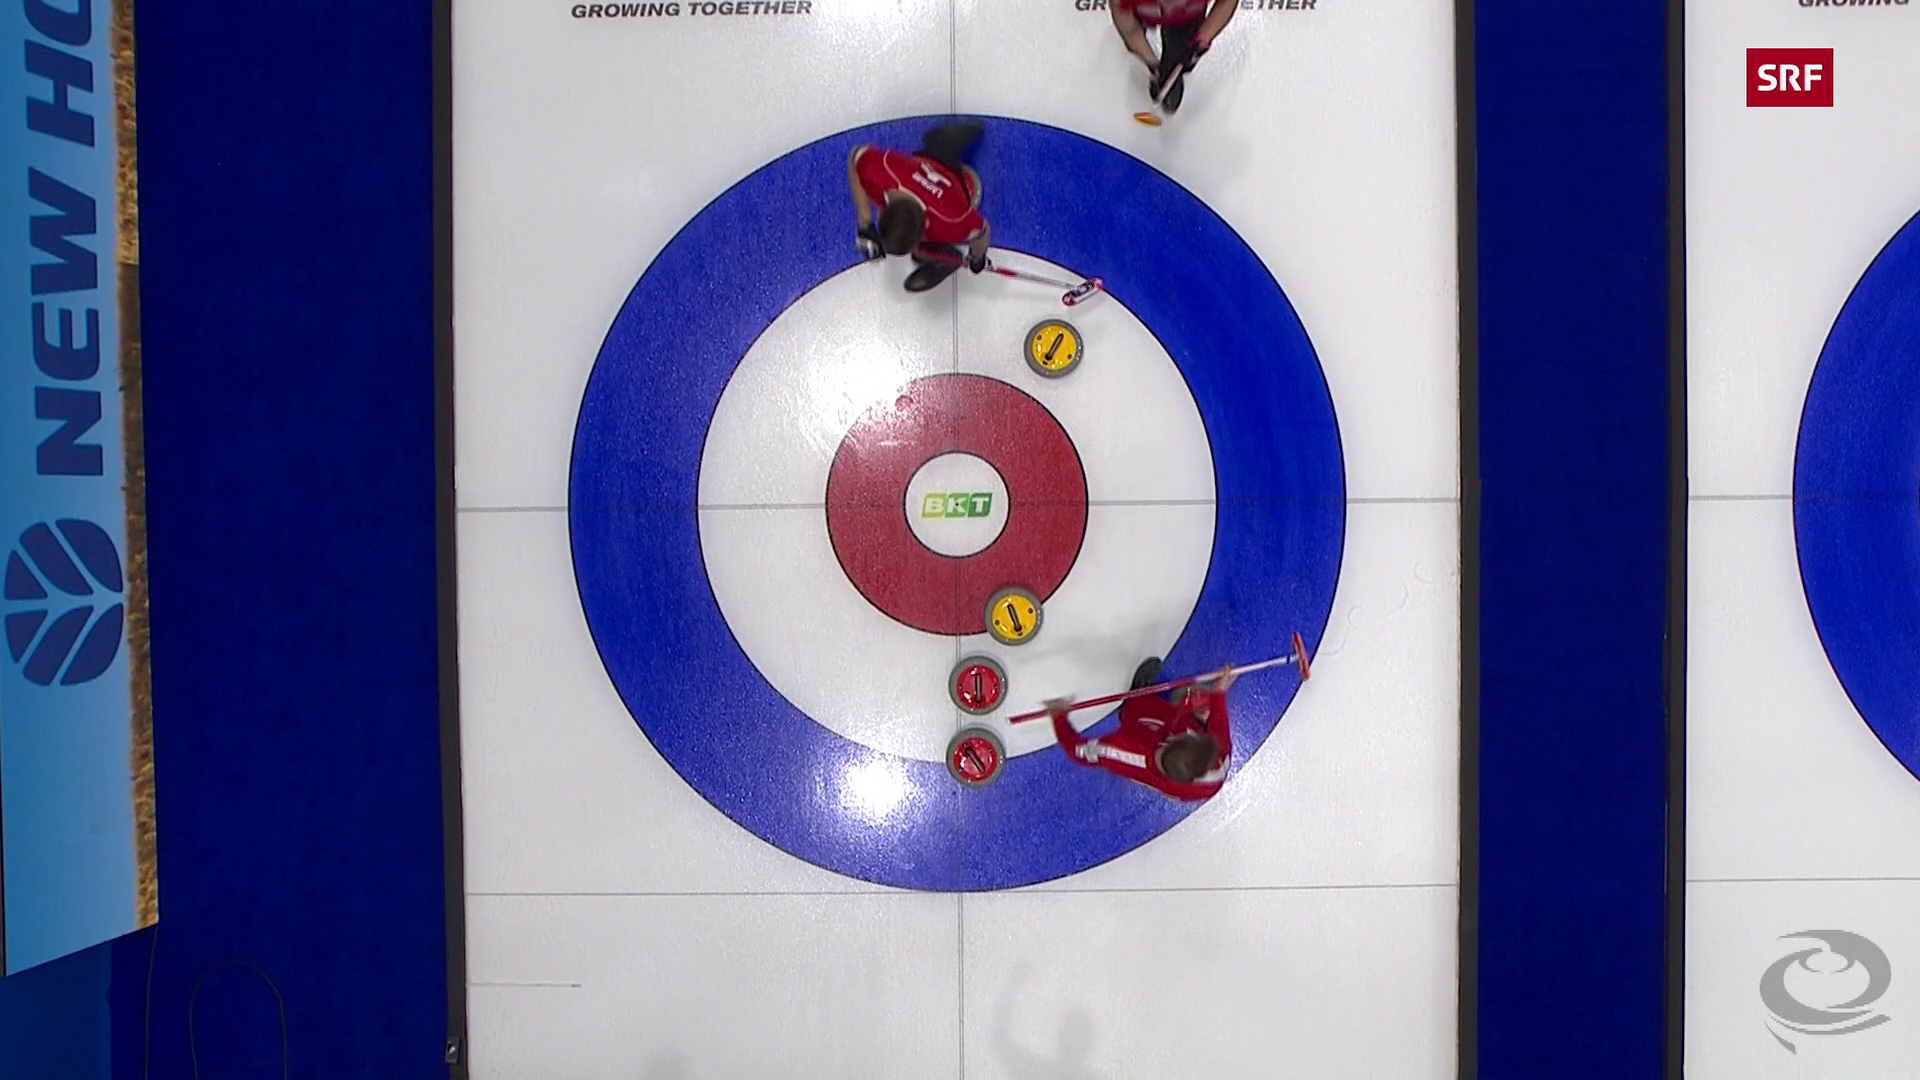 Curling-WM in Ottawa - Schweizer Curler finden rasch zum Siegen zurück - Sport